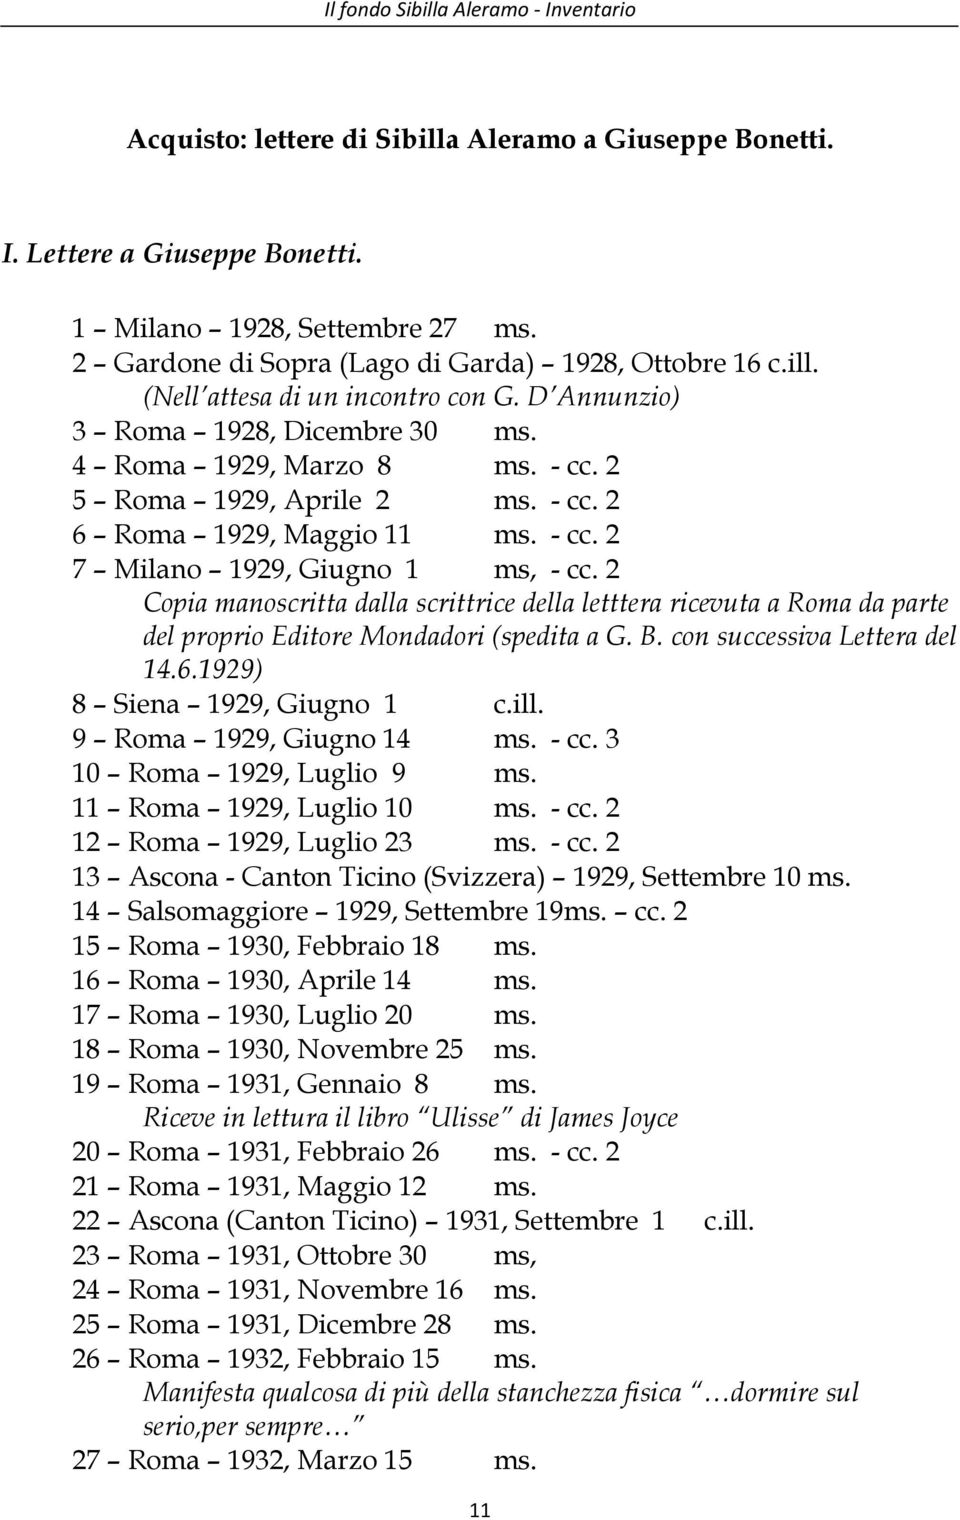 - cc. 2 7 Milano 1929, Giugno 1 ms, - cc. 2 Copia manoscritta dalla scrittrice della letttera ricevuta a Roma da parte del proprio Editore Mondadori (spedita a G. B. con successiva Lettera del 14.6.